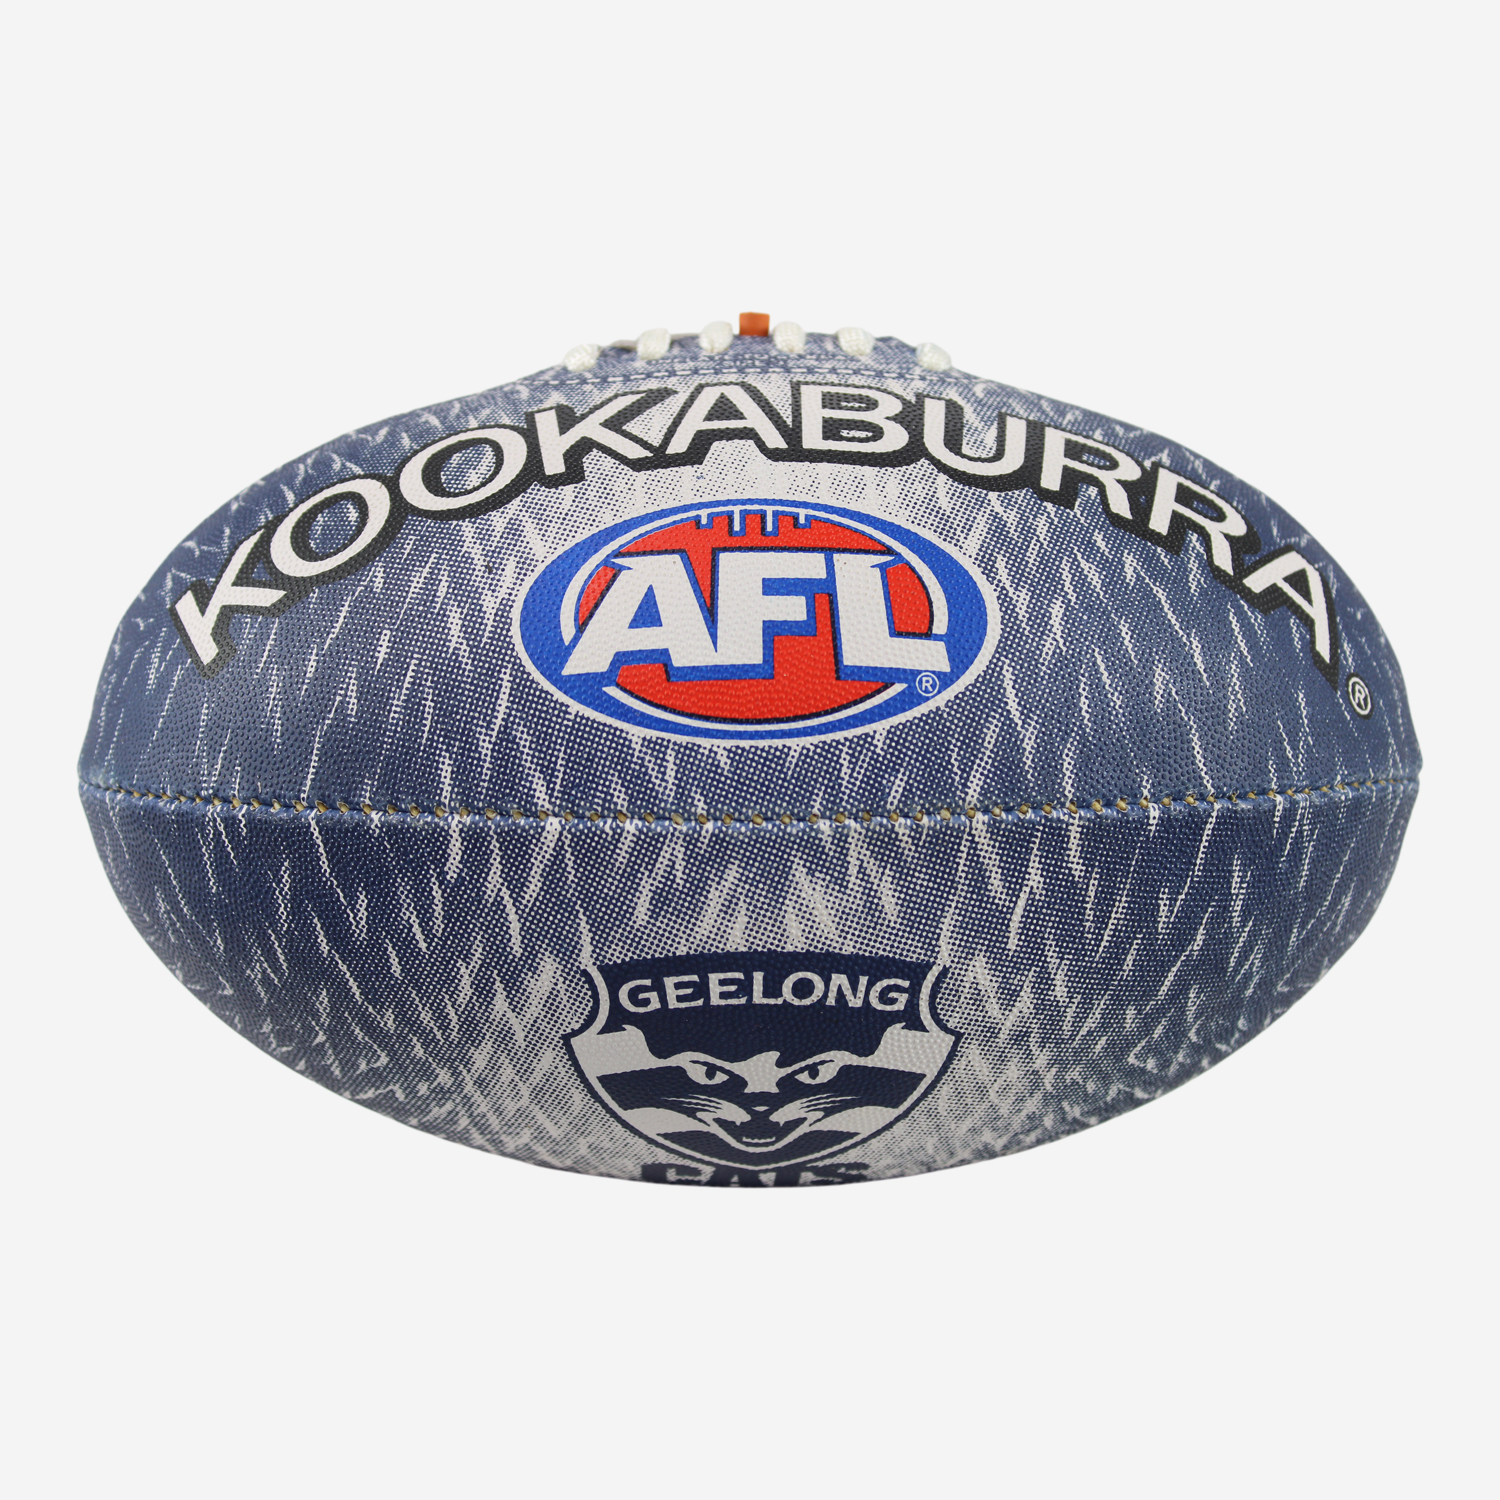 Kookaburra AFL Aura Football Size 3 Geelong Cats